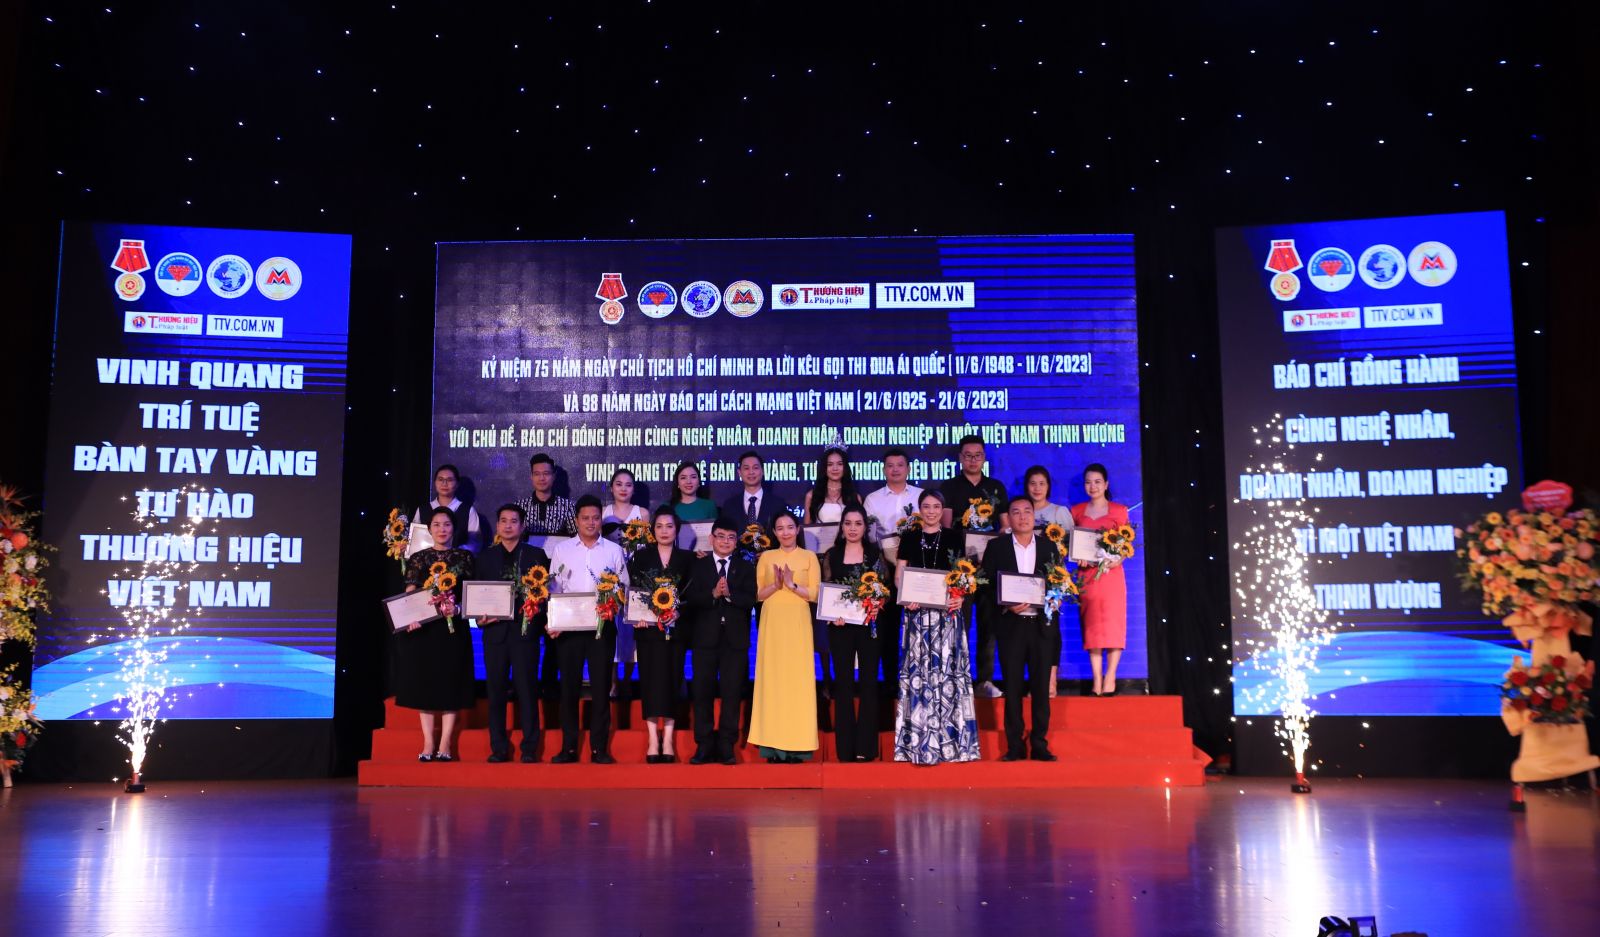 Kỉ niệm 10 năm thành lập Hội Nghệ nhân và Thương hiệu Việt Nam: Phát huy tâm đức và tài năng của nghệ nhân, doanh nhân trong thời kỳ hội nhập kinh tế quốc tế